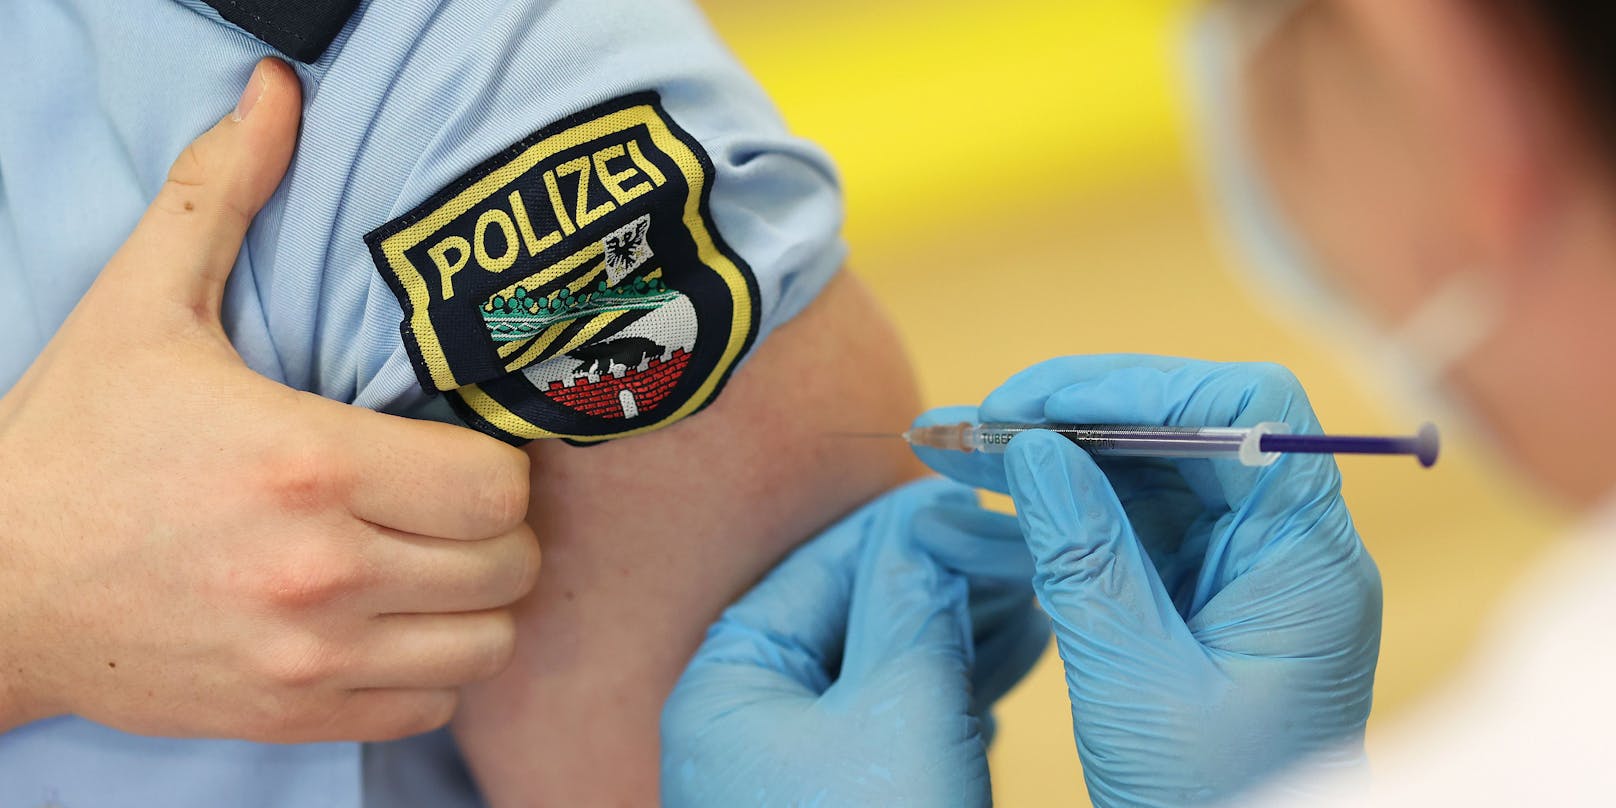 In Deutschland wurden&nbsp;die ersten Polizisten bereits gegen Corona geimpft (Bild). Österreich zieht Anfang April nach.